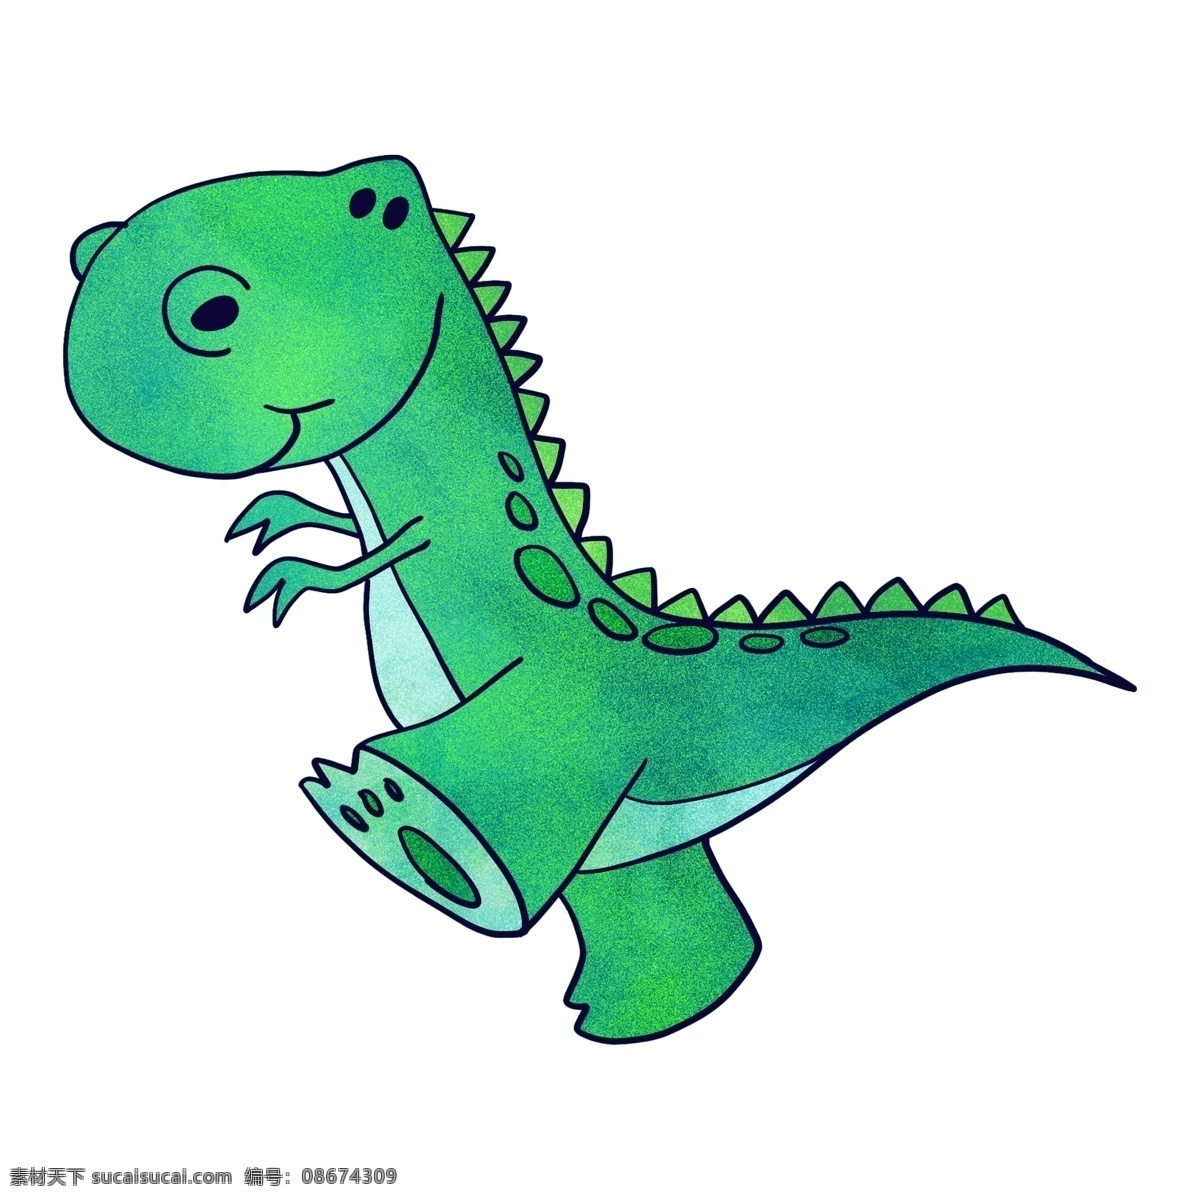 行走 绿色 小 恐龙 行走的 动物 侏罗纪恐龙 卡通动物 动物头像 精美 创意 远古生物